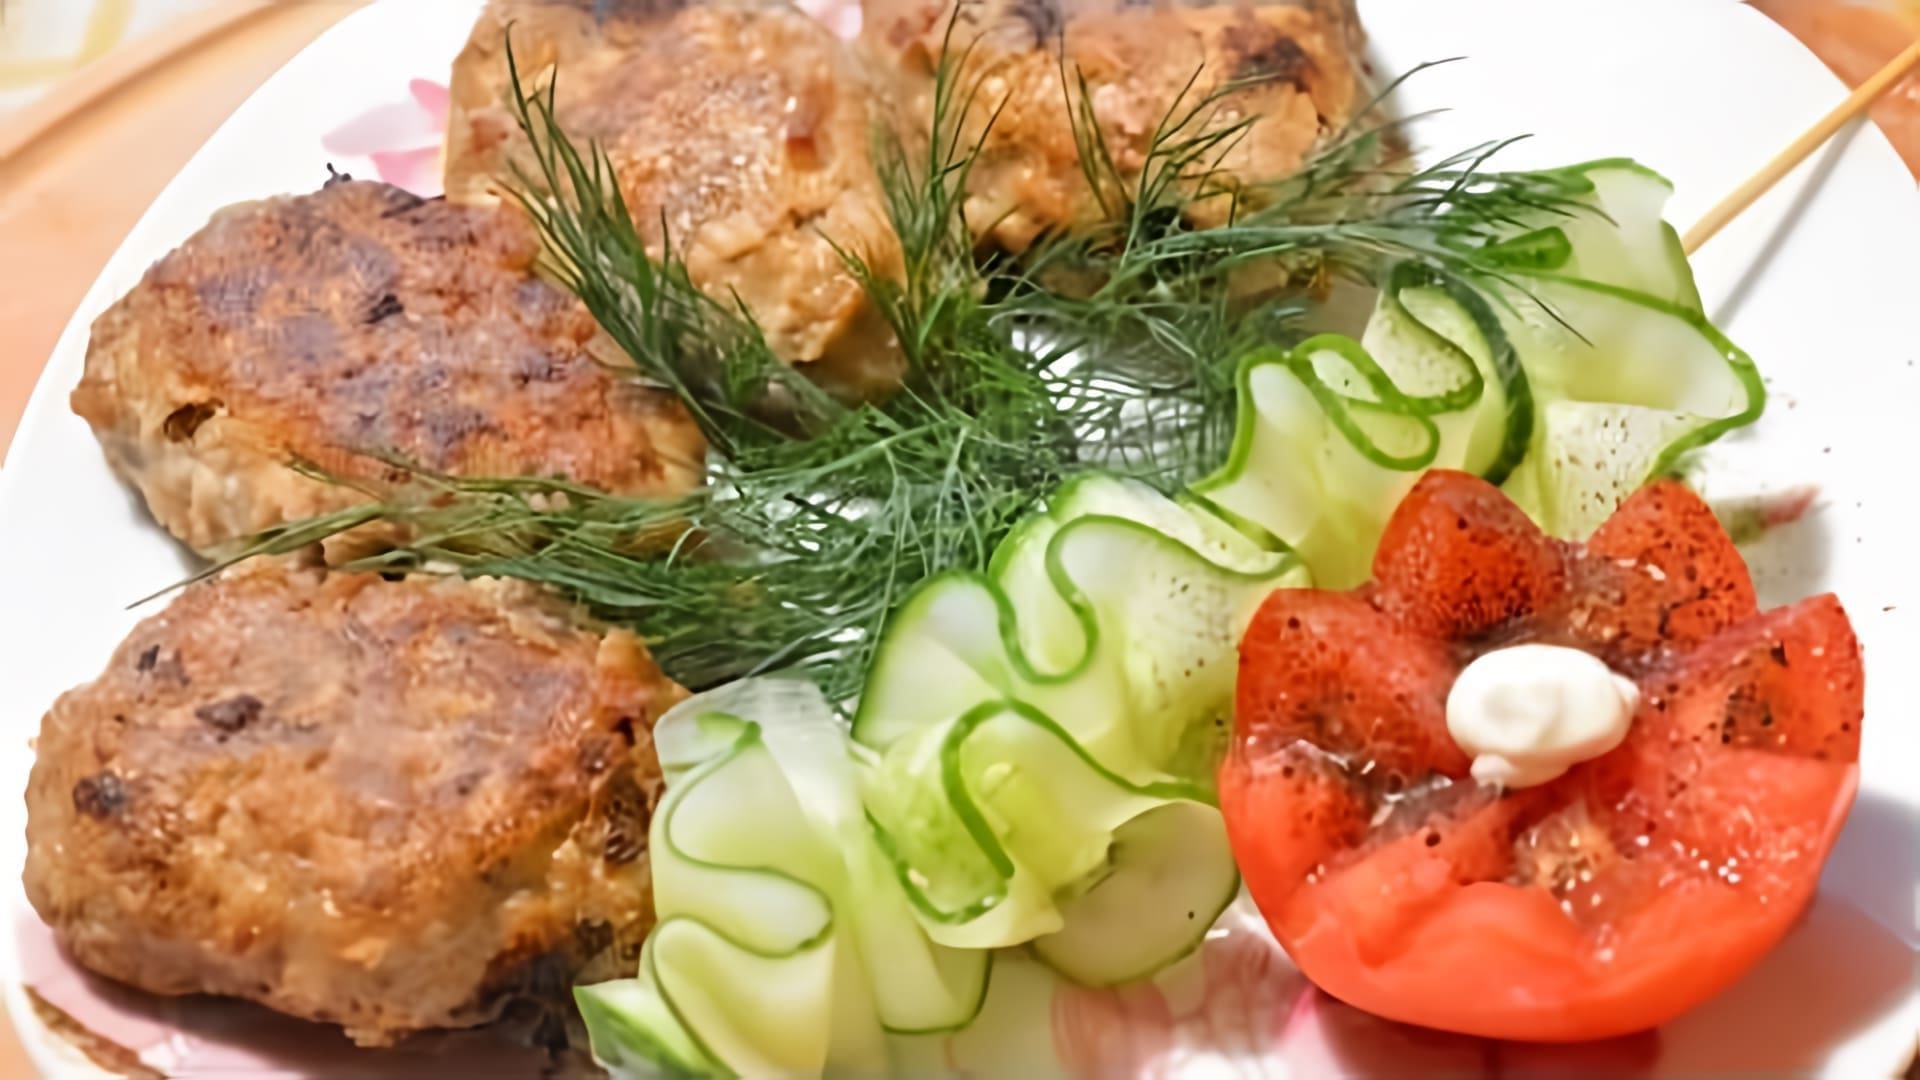 В этом видео демонстрируется рецепт приготовления гречаников - котлет из гречки и фарша